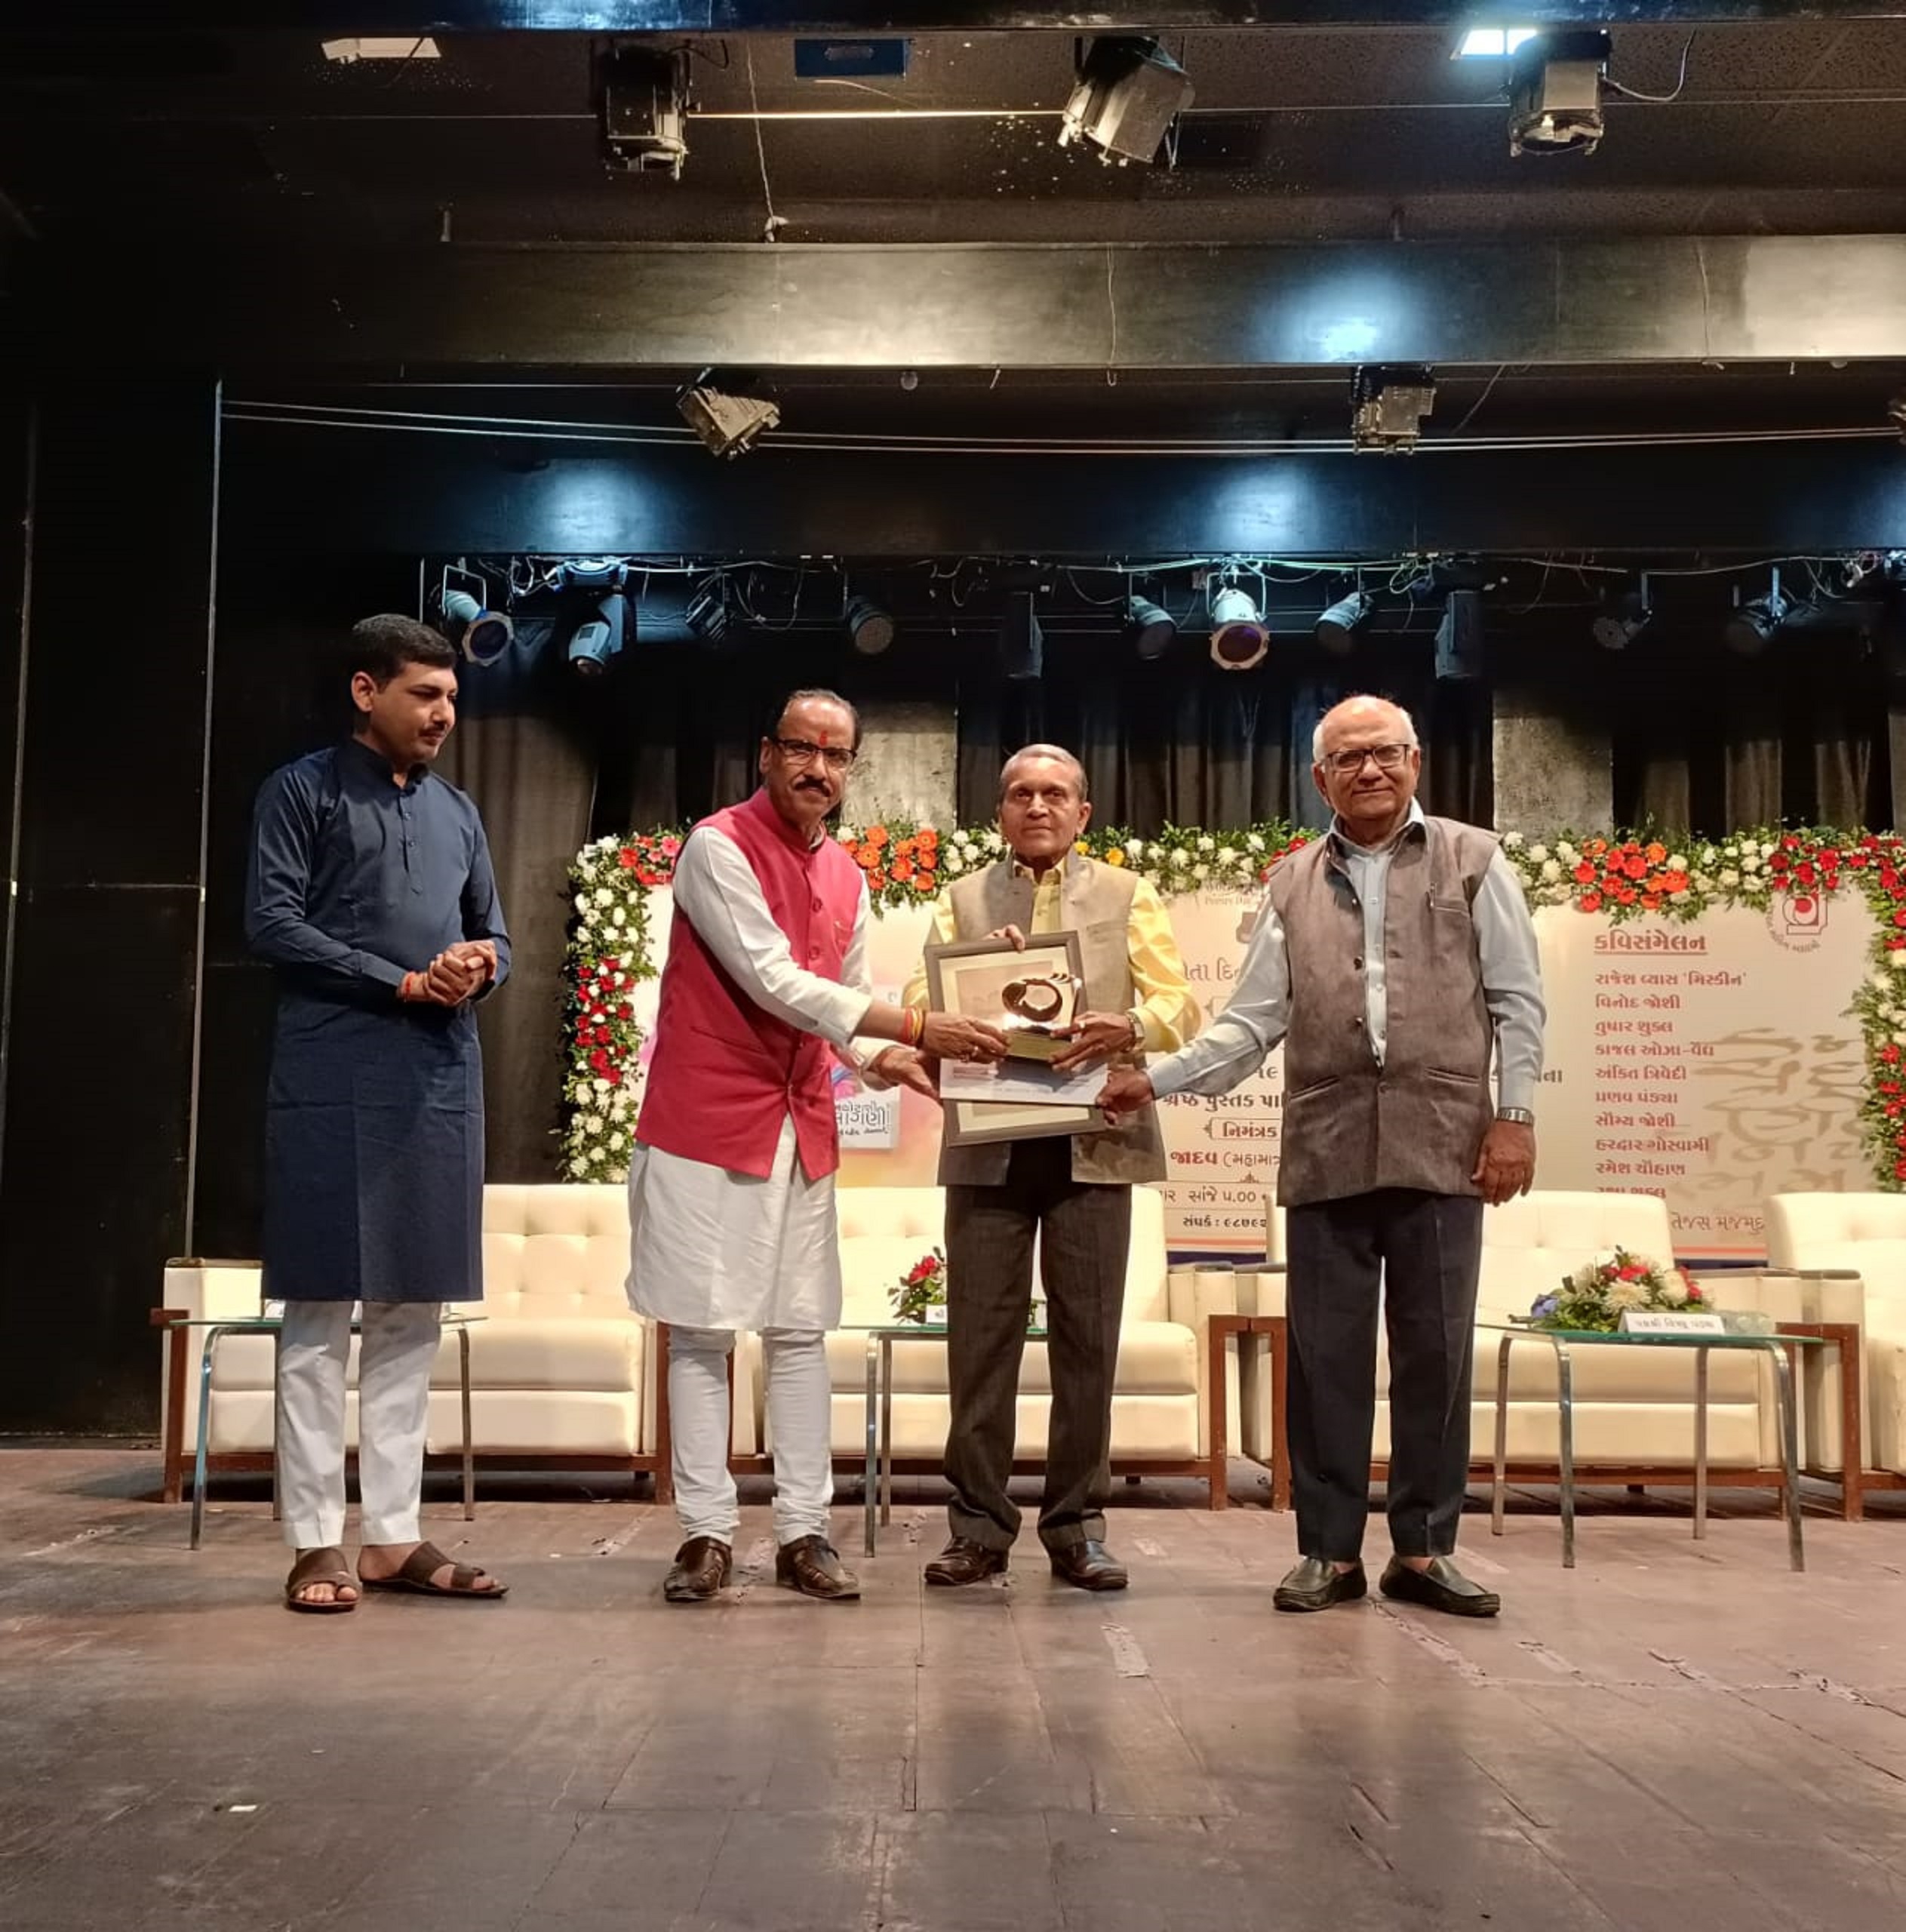 साहित्यकार भरतचन्द्र शर्मा को गुजरात हिंदी साहित्य अकादमी का श्रेष्ठ कृति सम्मान